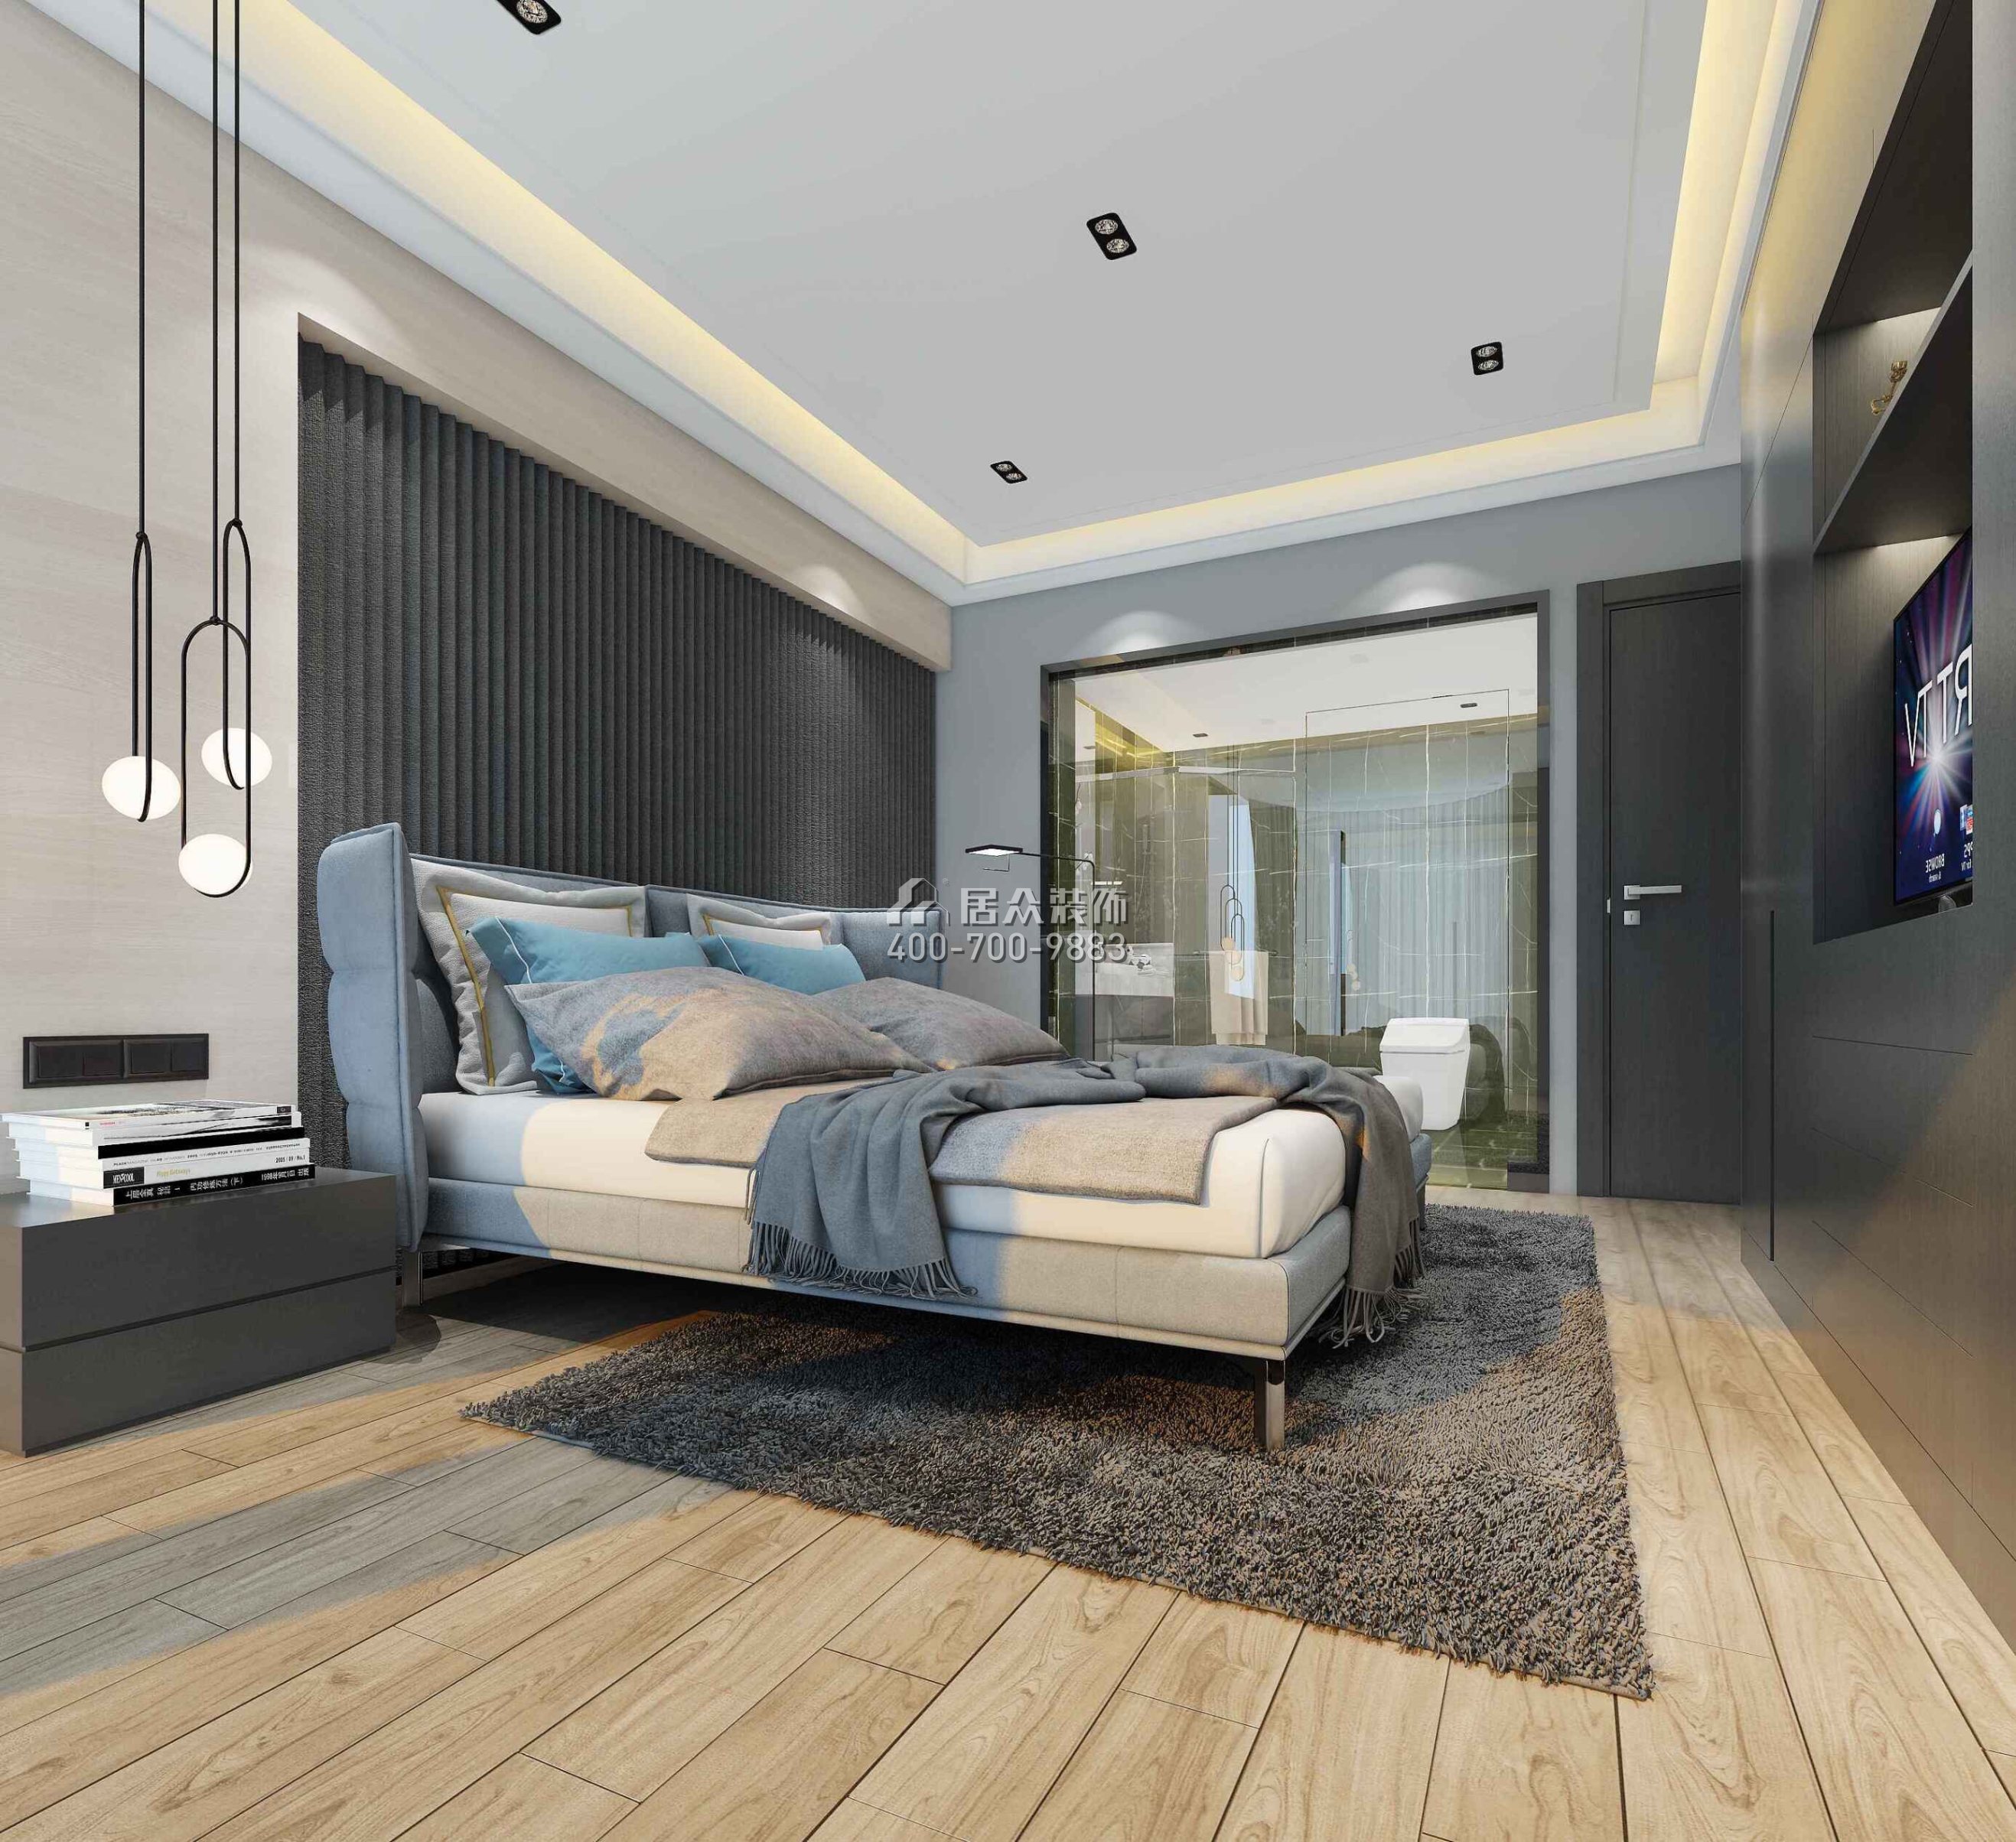 合生·濱海城160平方米現代簡約風格平層戶型臥室裝修效果圖